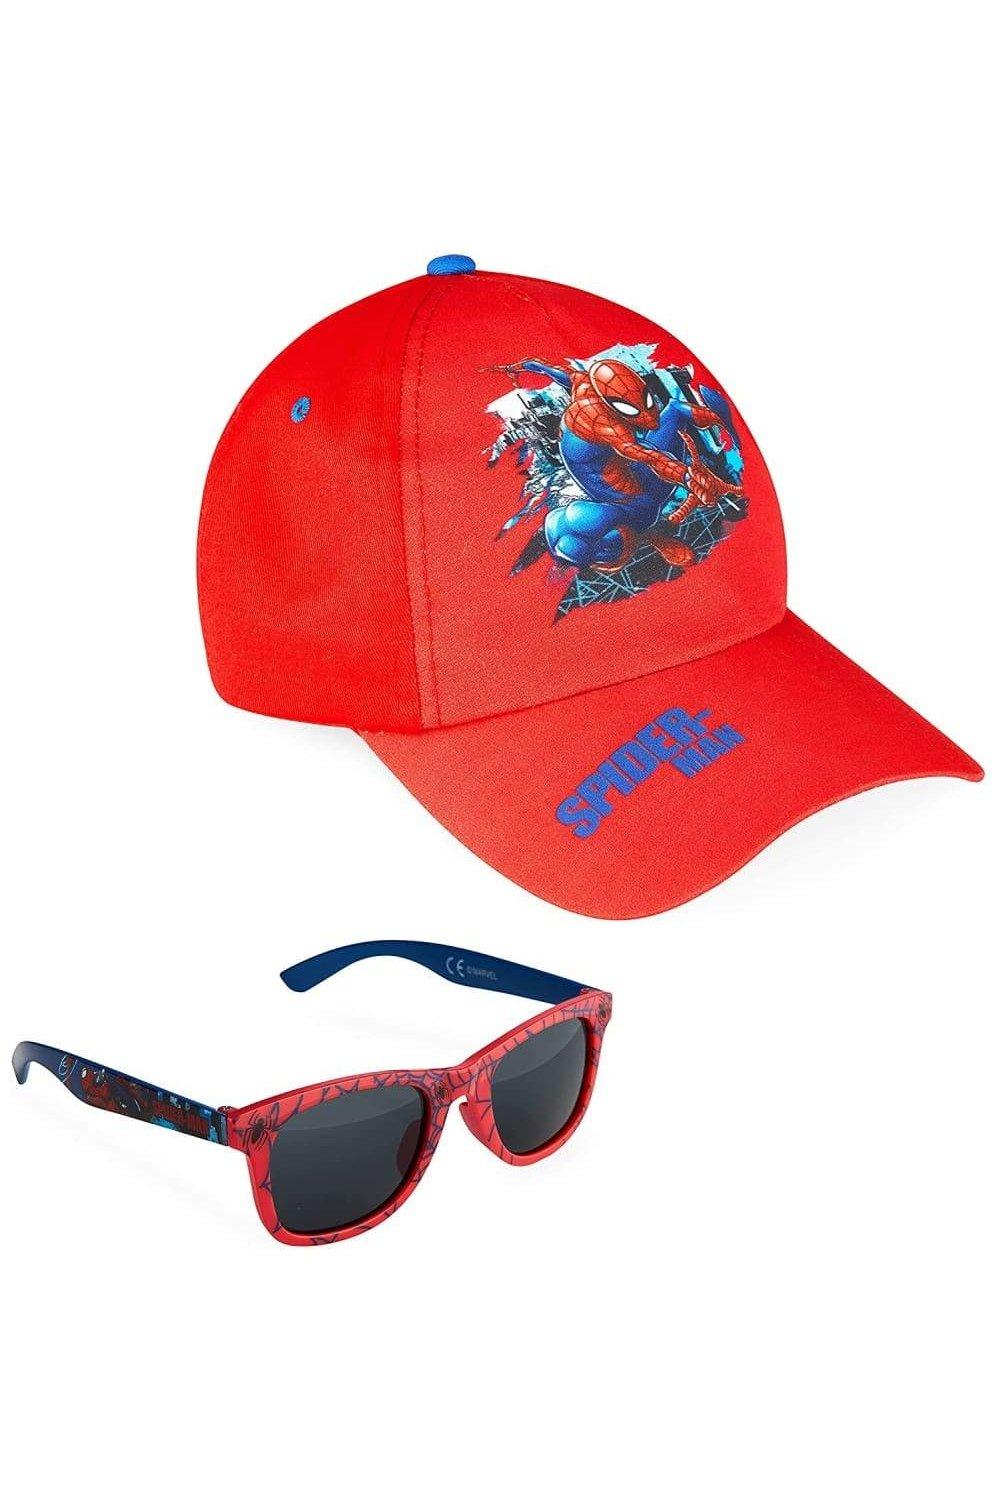 детские солнцезащитные очки диснеевская принцесса ариель Человек-паук в красной кепке и солнцезащитных очках Marvel, красный